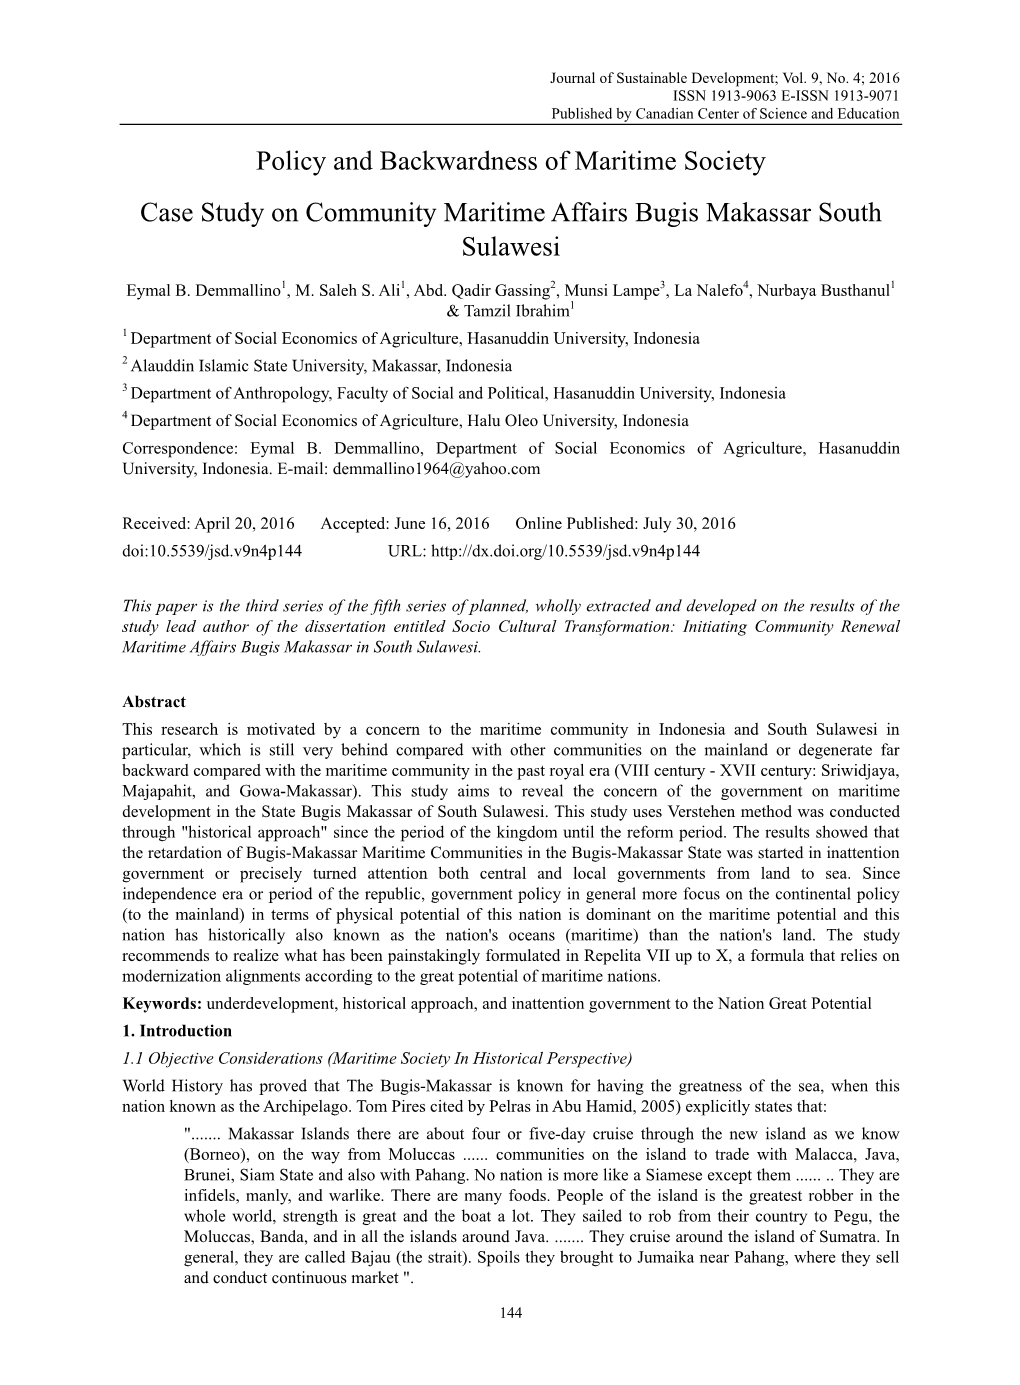 Policy and Backwardness of Maritime Society Case Study on Community Maritime Affairs Bugis Makassar South Sulawesi